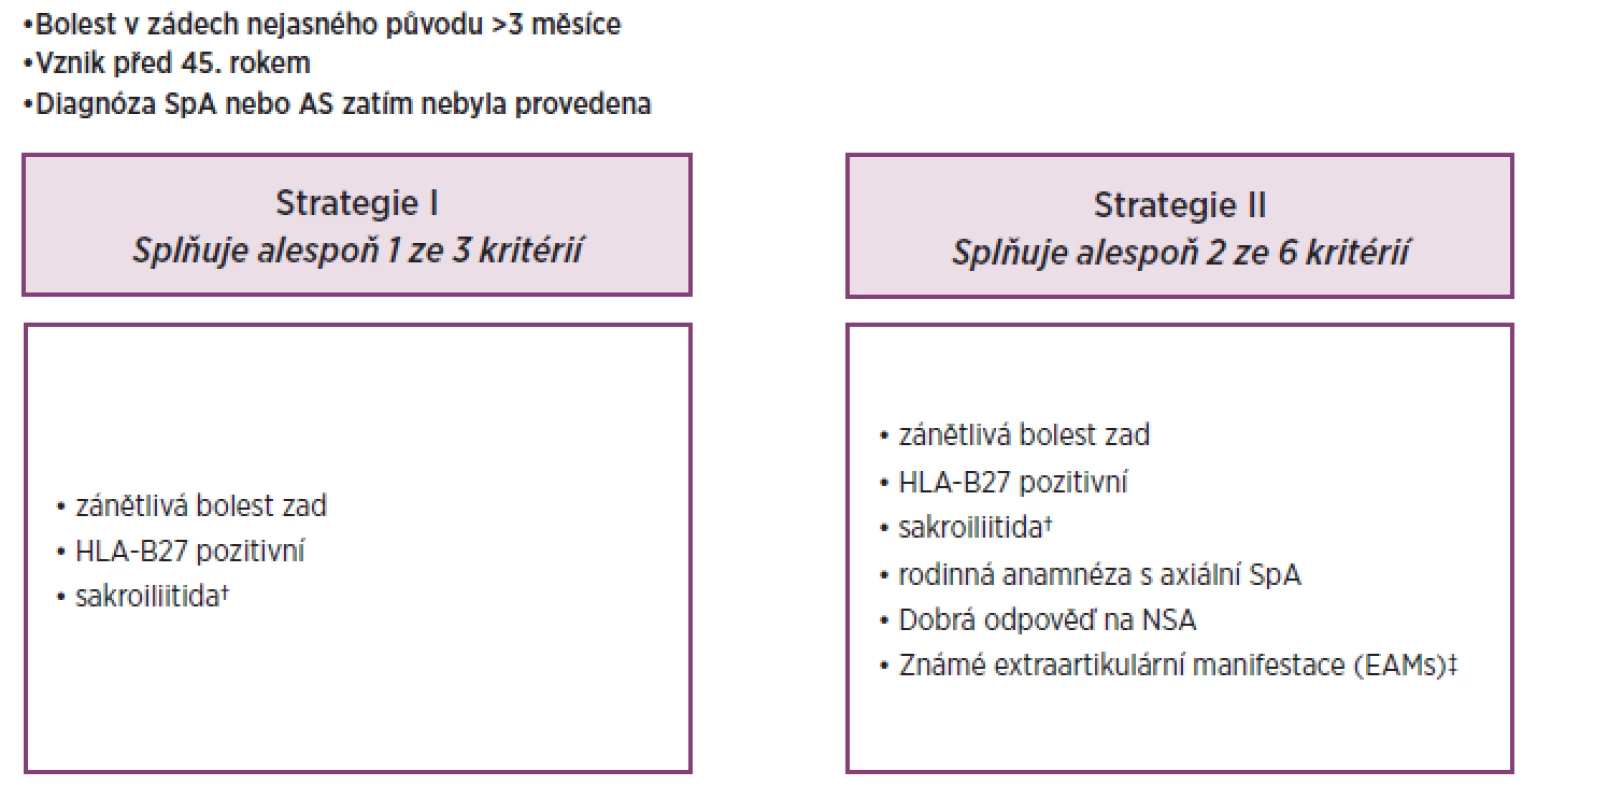 Srovnání dvou referenčních strategií v diagnóze axiální SpA – studie R.